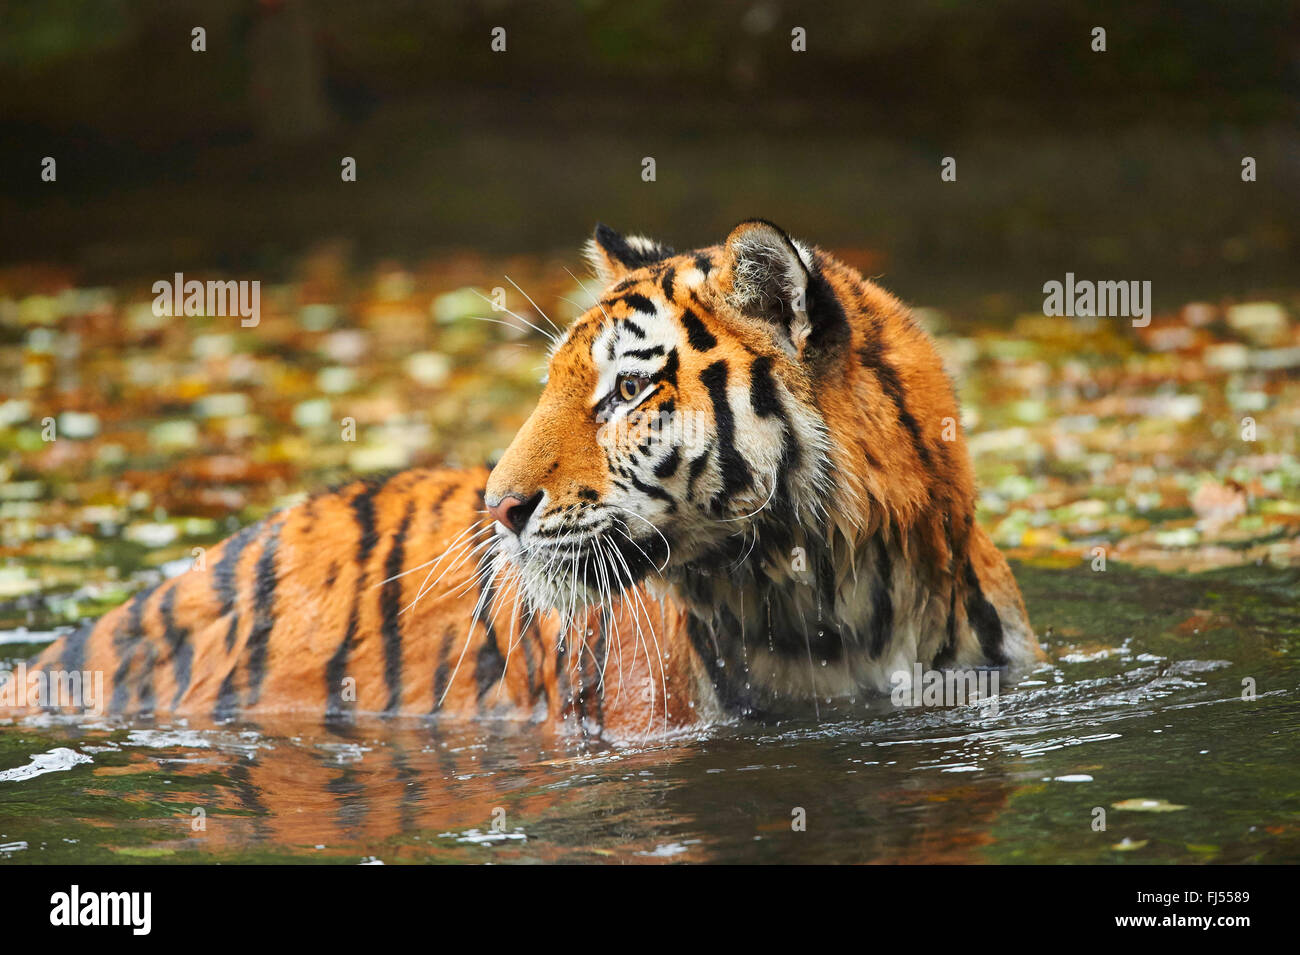 Tigre de Sibérie, Amurian tigre (Panthera tigris altaica), tigresse echelle dans un étang à l'automne Banque D'Images